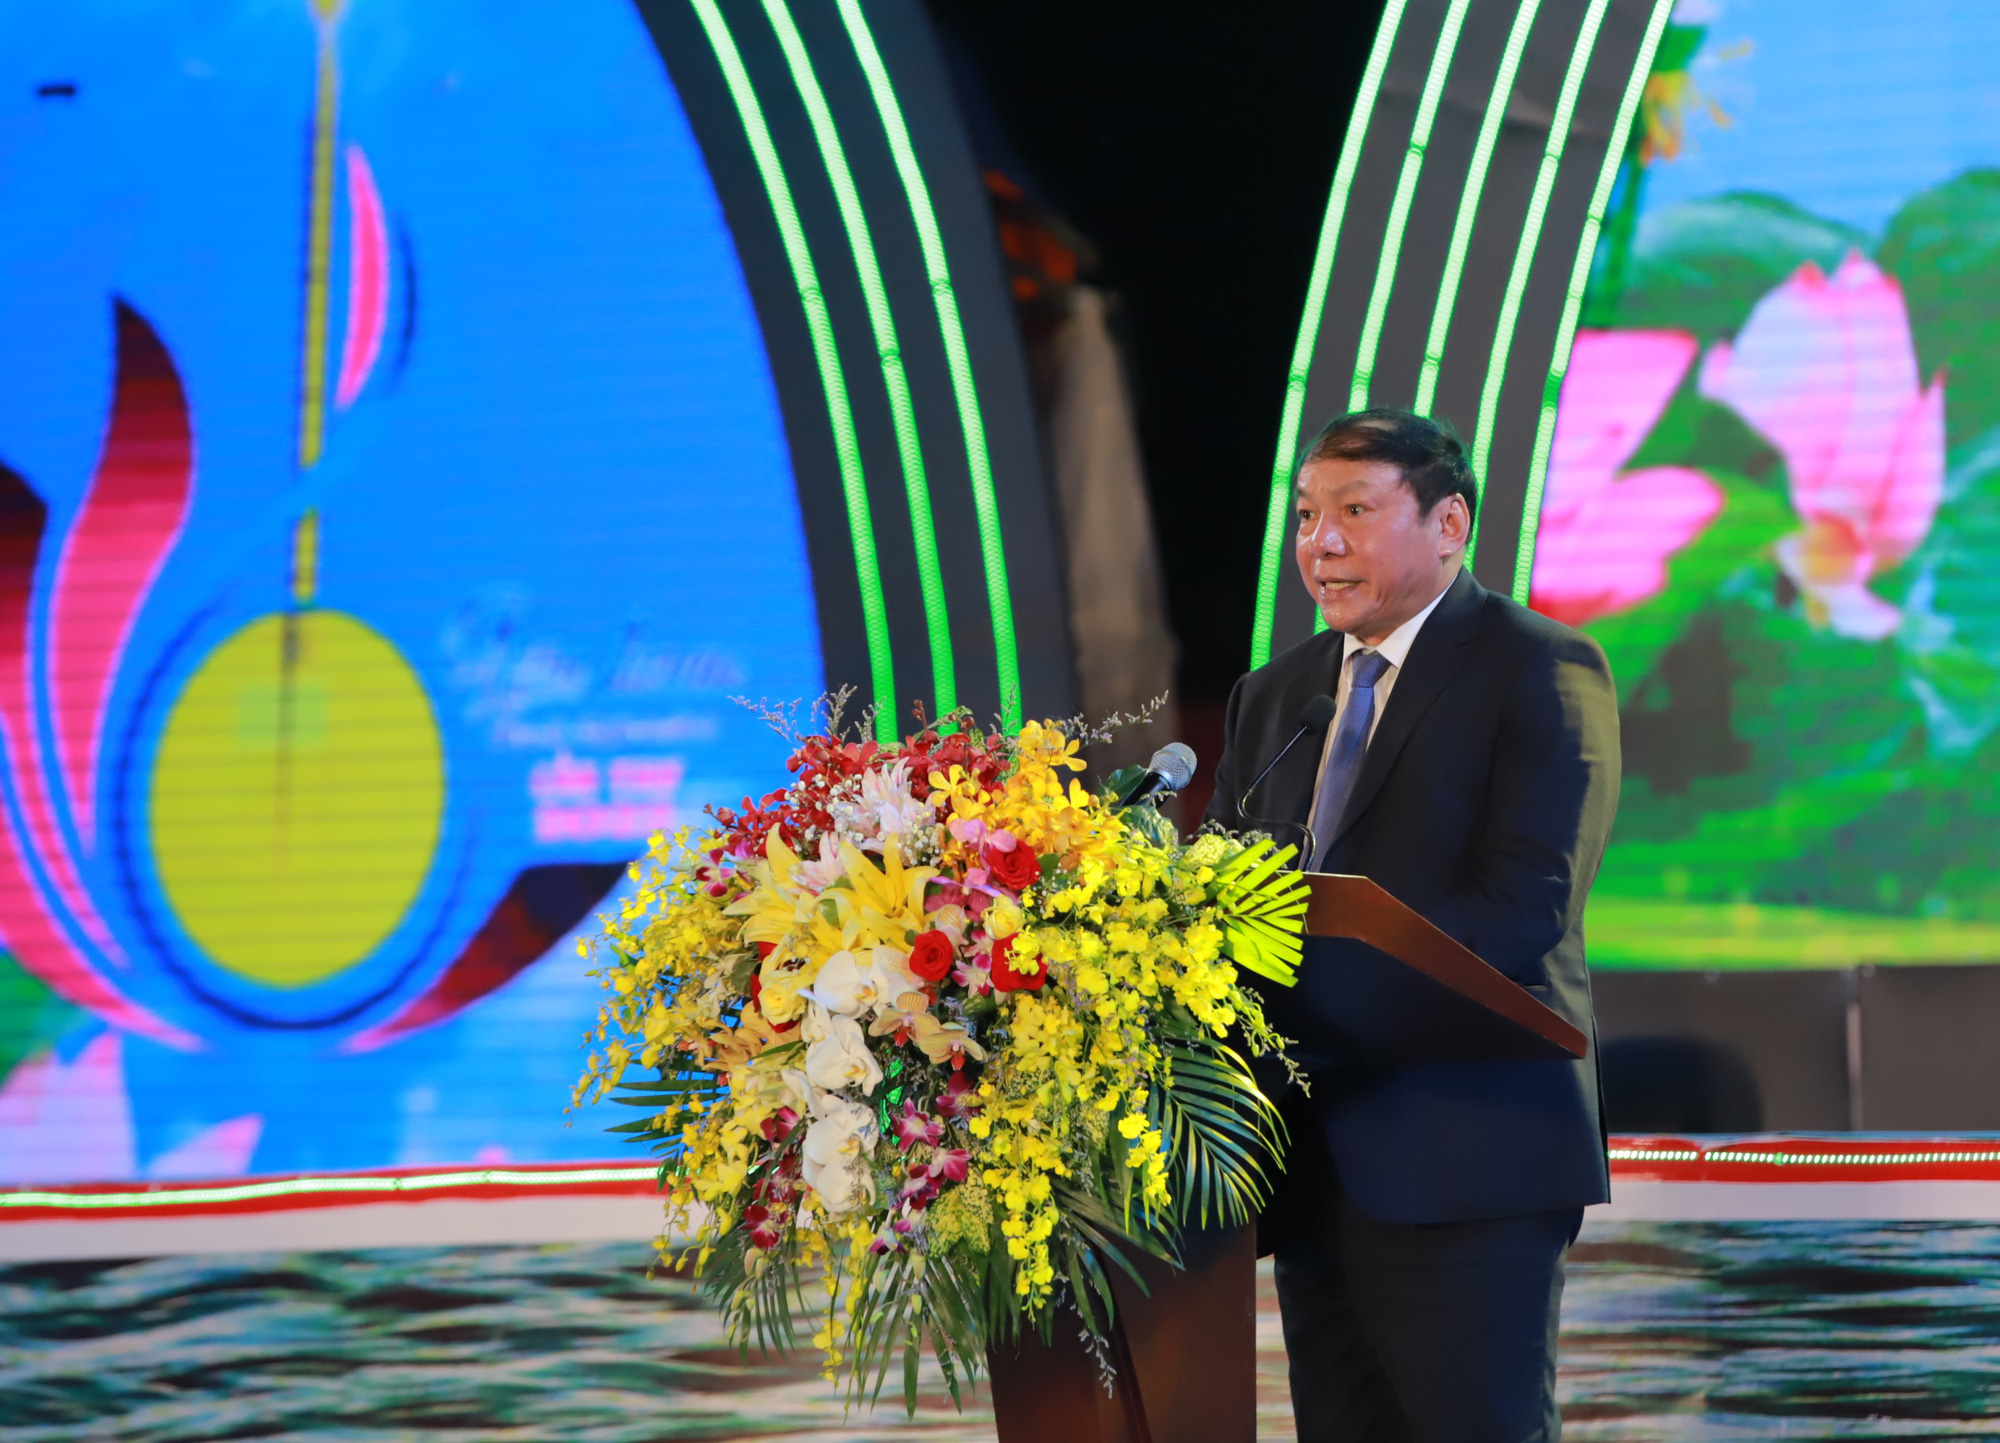 Bộ trưởng Nguyễn Văn Hùng: Nghiên cứu chính sách hỗ trợ để các nghệ nhân đờn ca tài tử giữ gìn bản sắc, truyền lửa cho các thế hệ tương lai - Ảnh 3.